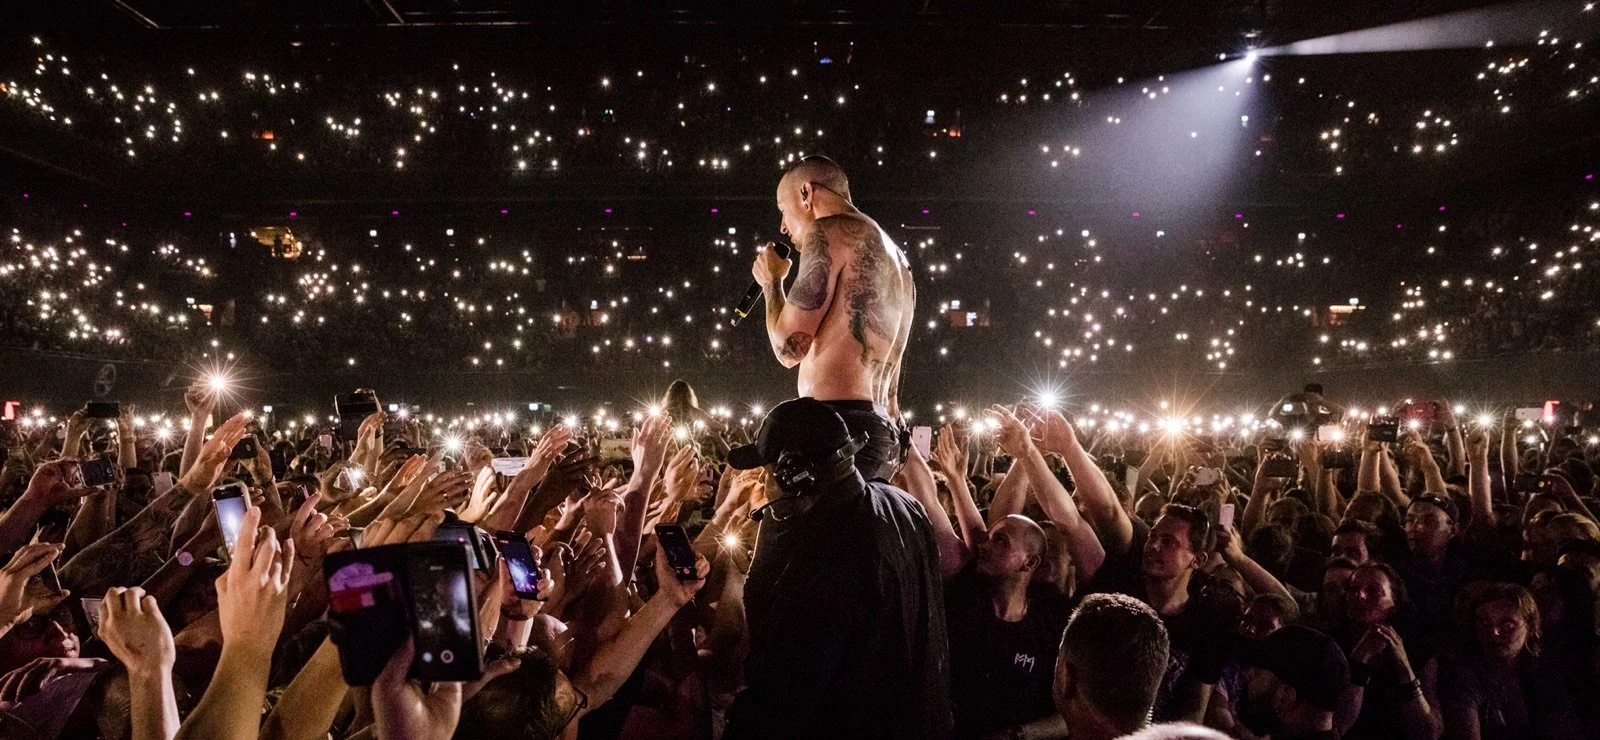 Новый альбом Linkin Park «One More Light Live» выйдет 15 декабря. Предзаказ уже доступен - фото 1